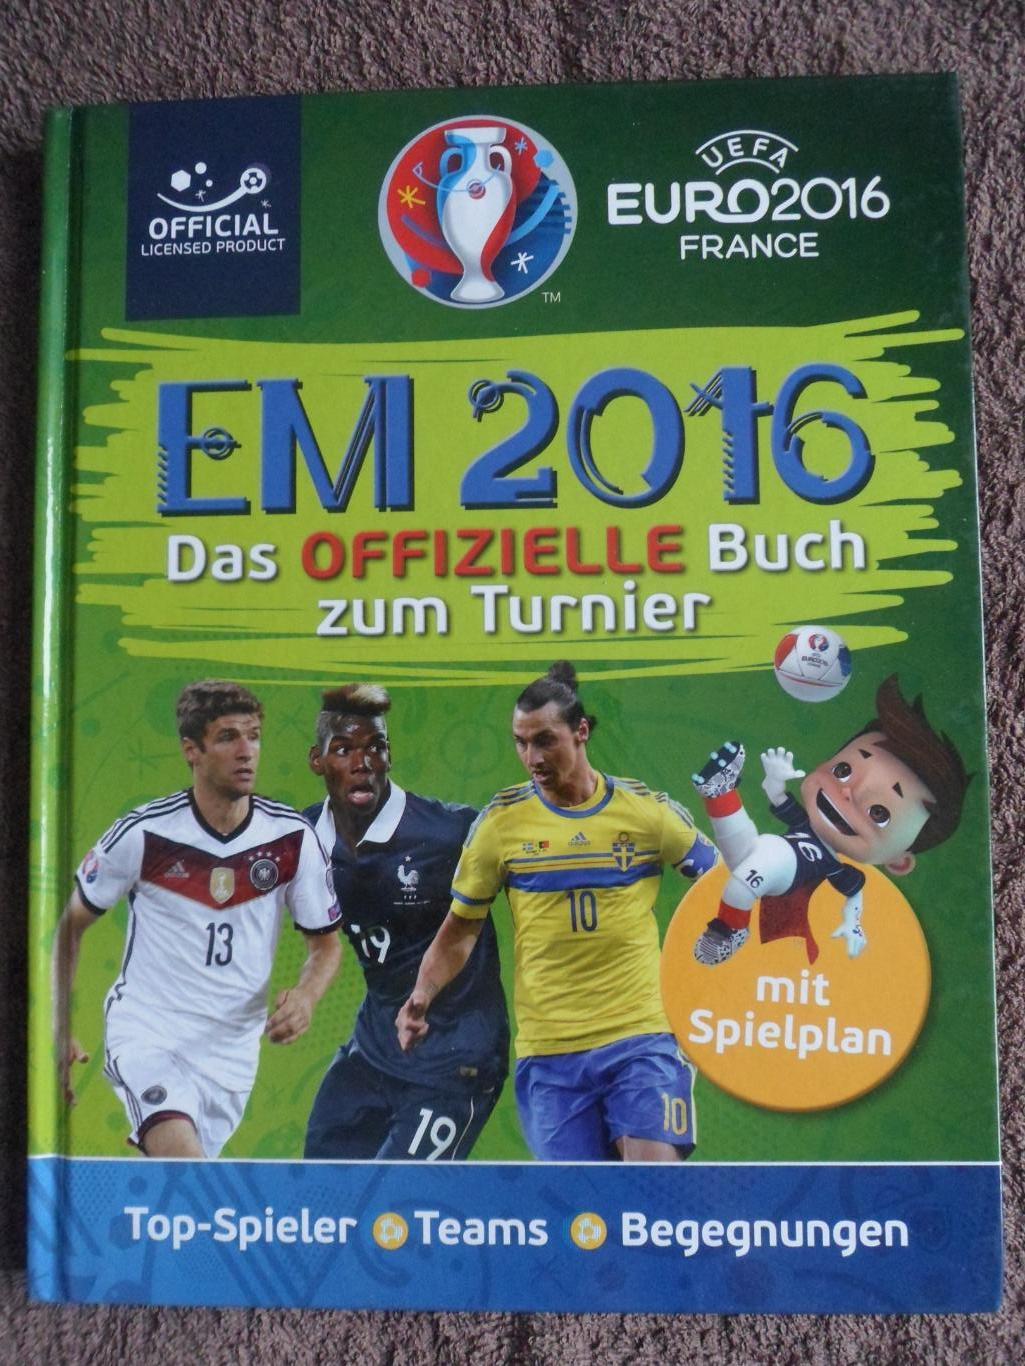 общая программа - чемпионат Европы по футболу 2016